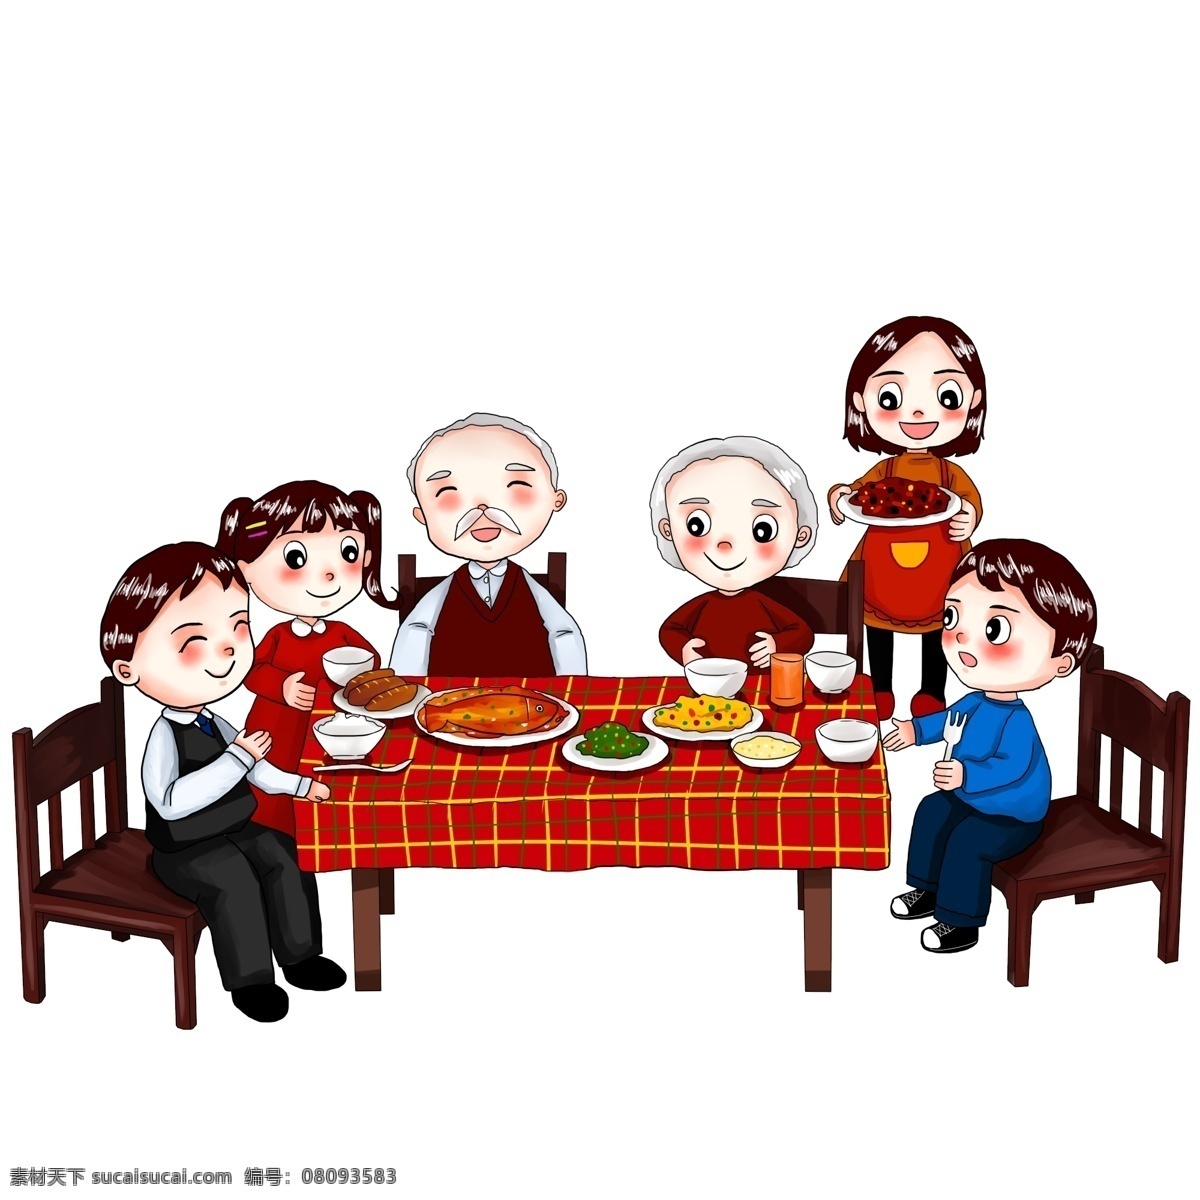 年夜饭 家人 过年 春节 父母 团圆 聚餐 吃饭 聚会 手绘 卡通 人物 卡通人物 家庭聚会 亲戚 长辈 家庭聚餐